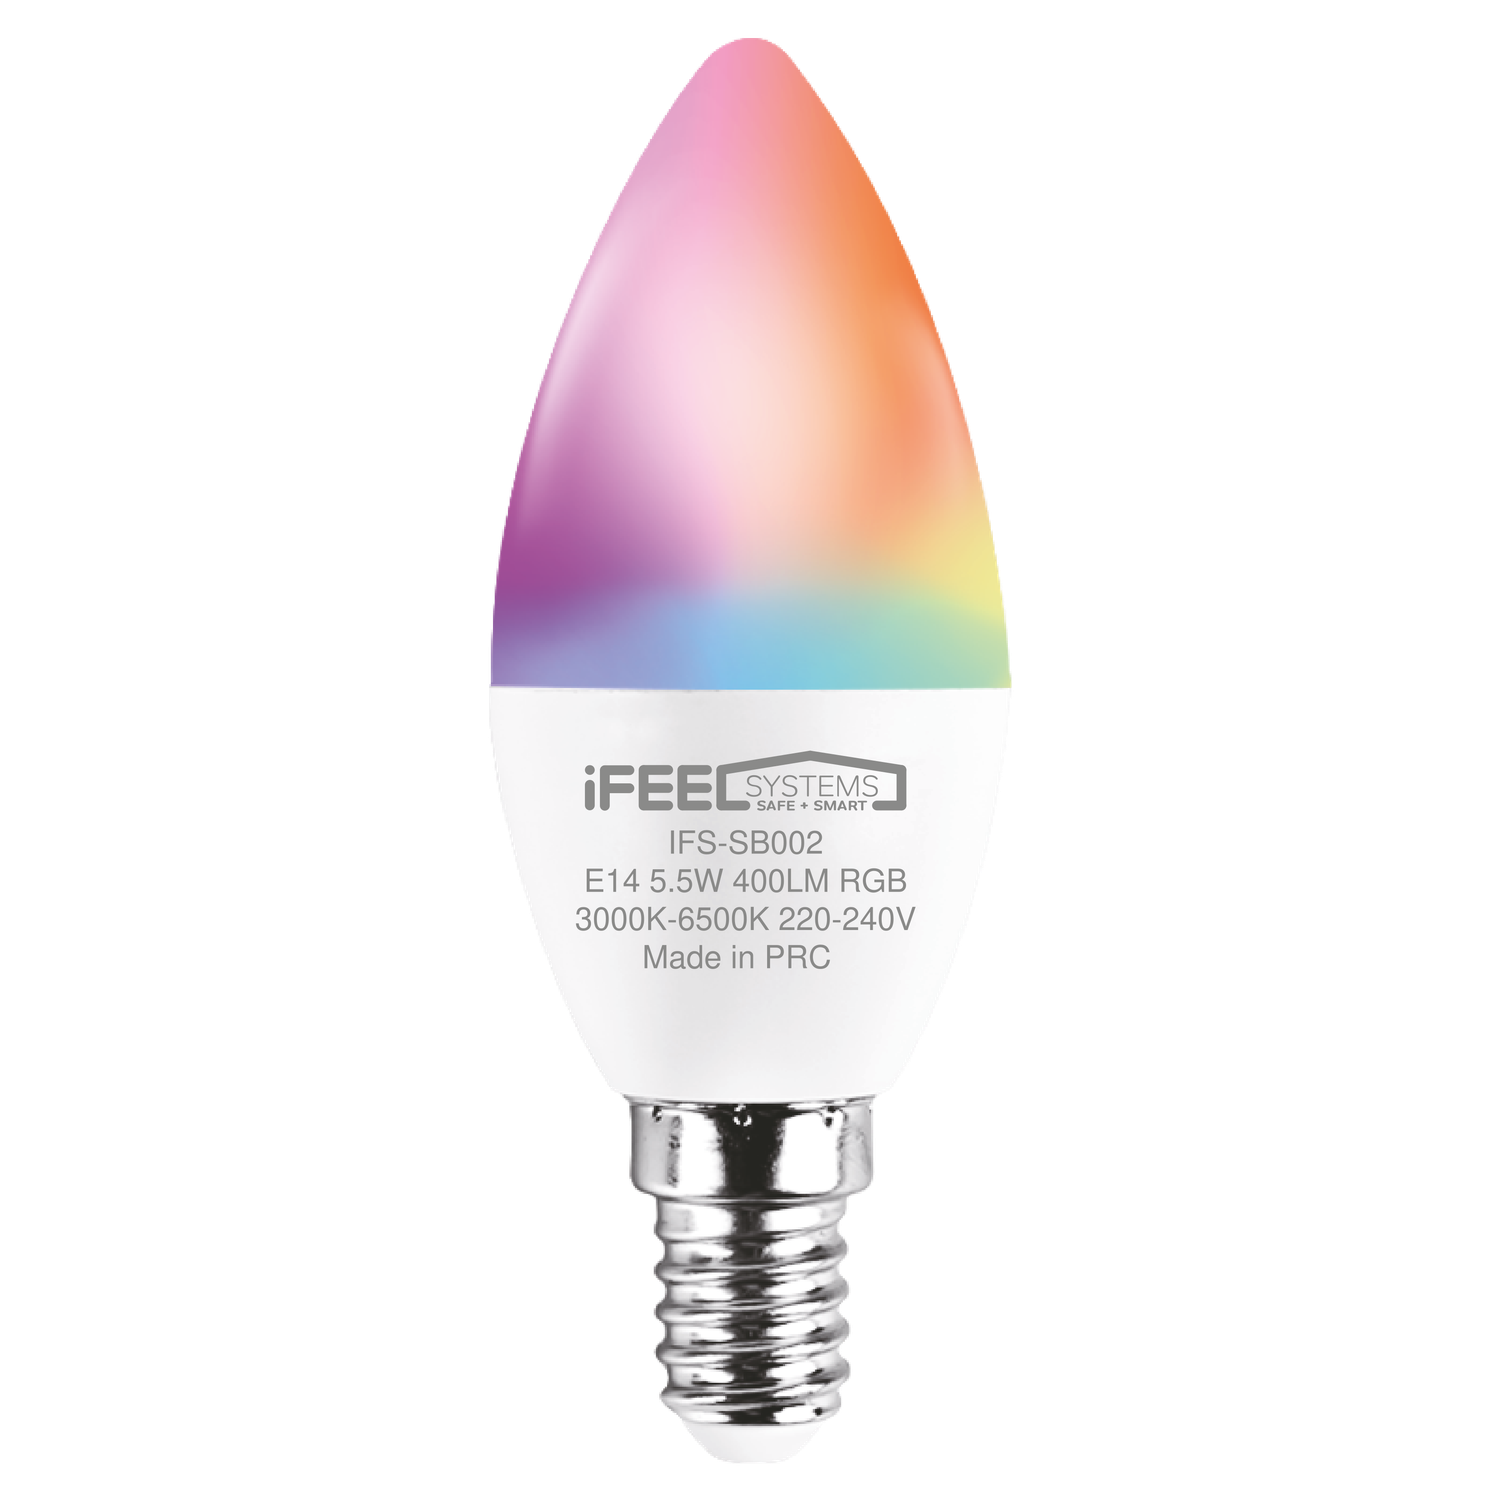 Умная лампочка iFEEL Candle Свеча E14 RGB с Wi-Fi Алисой - фото 1